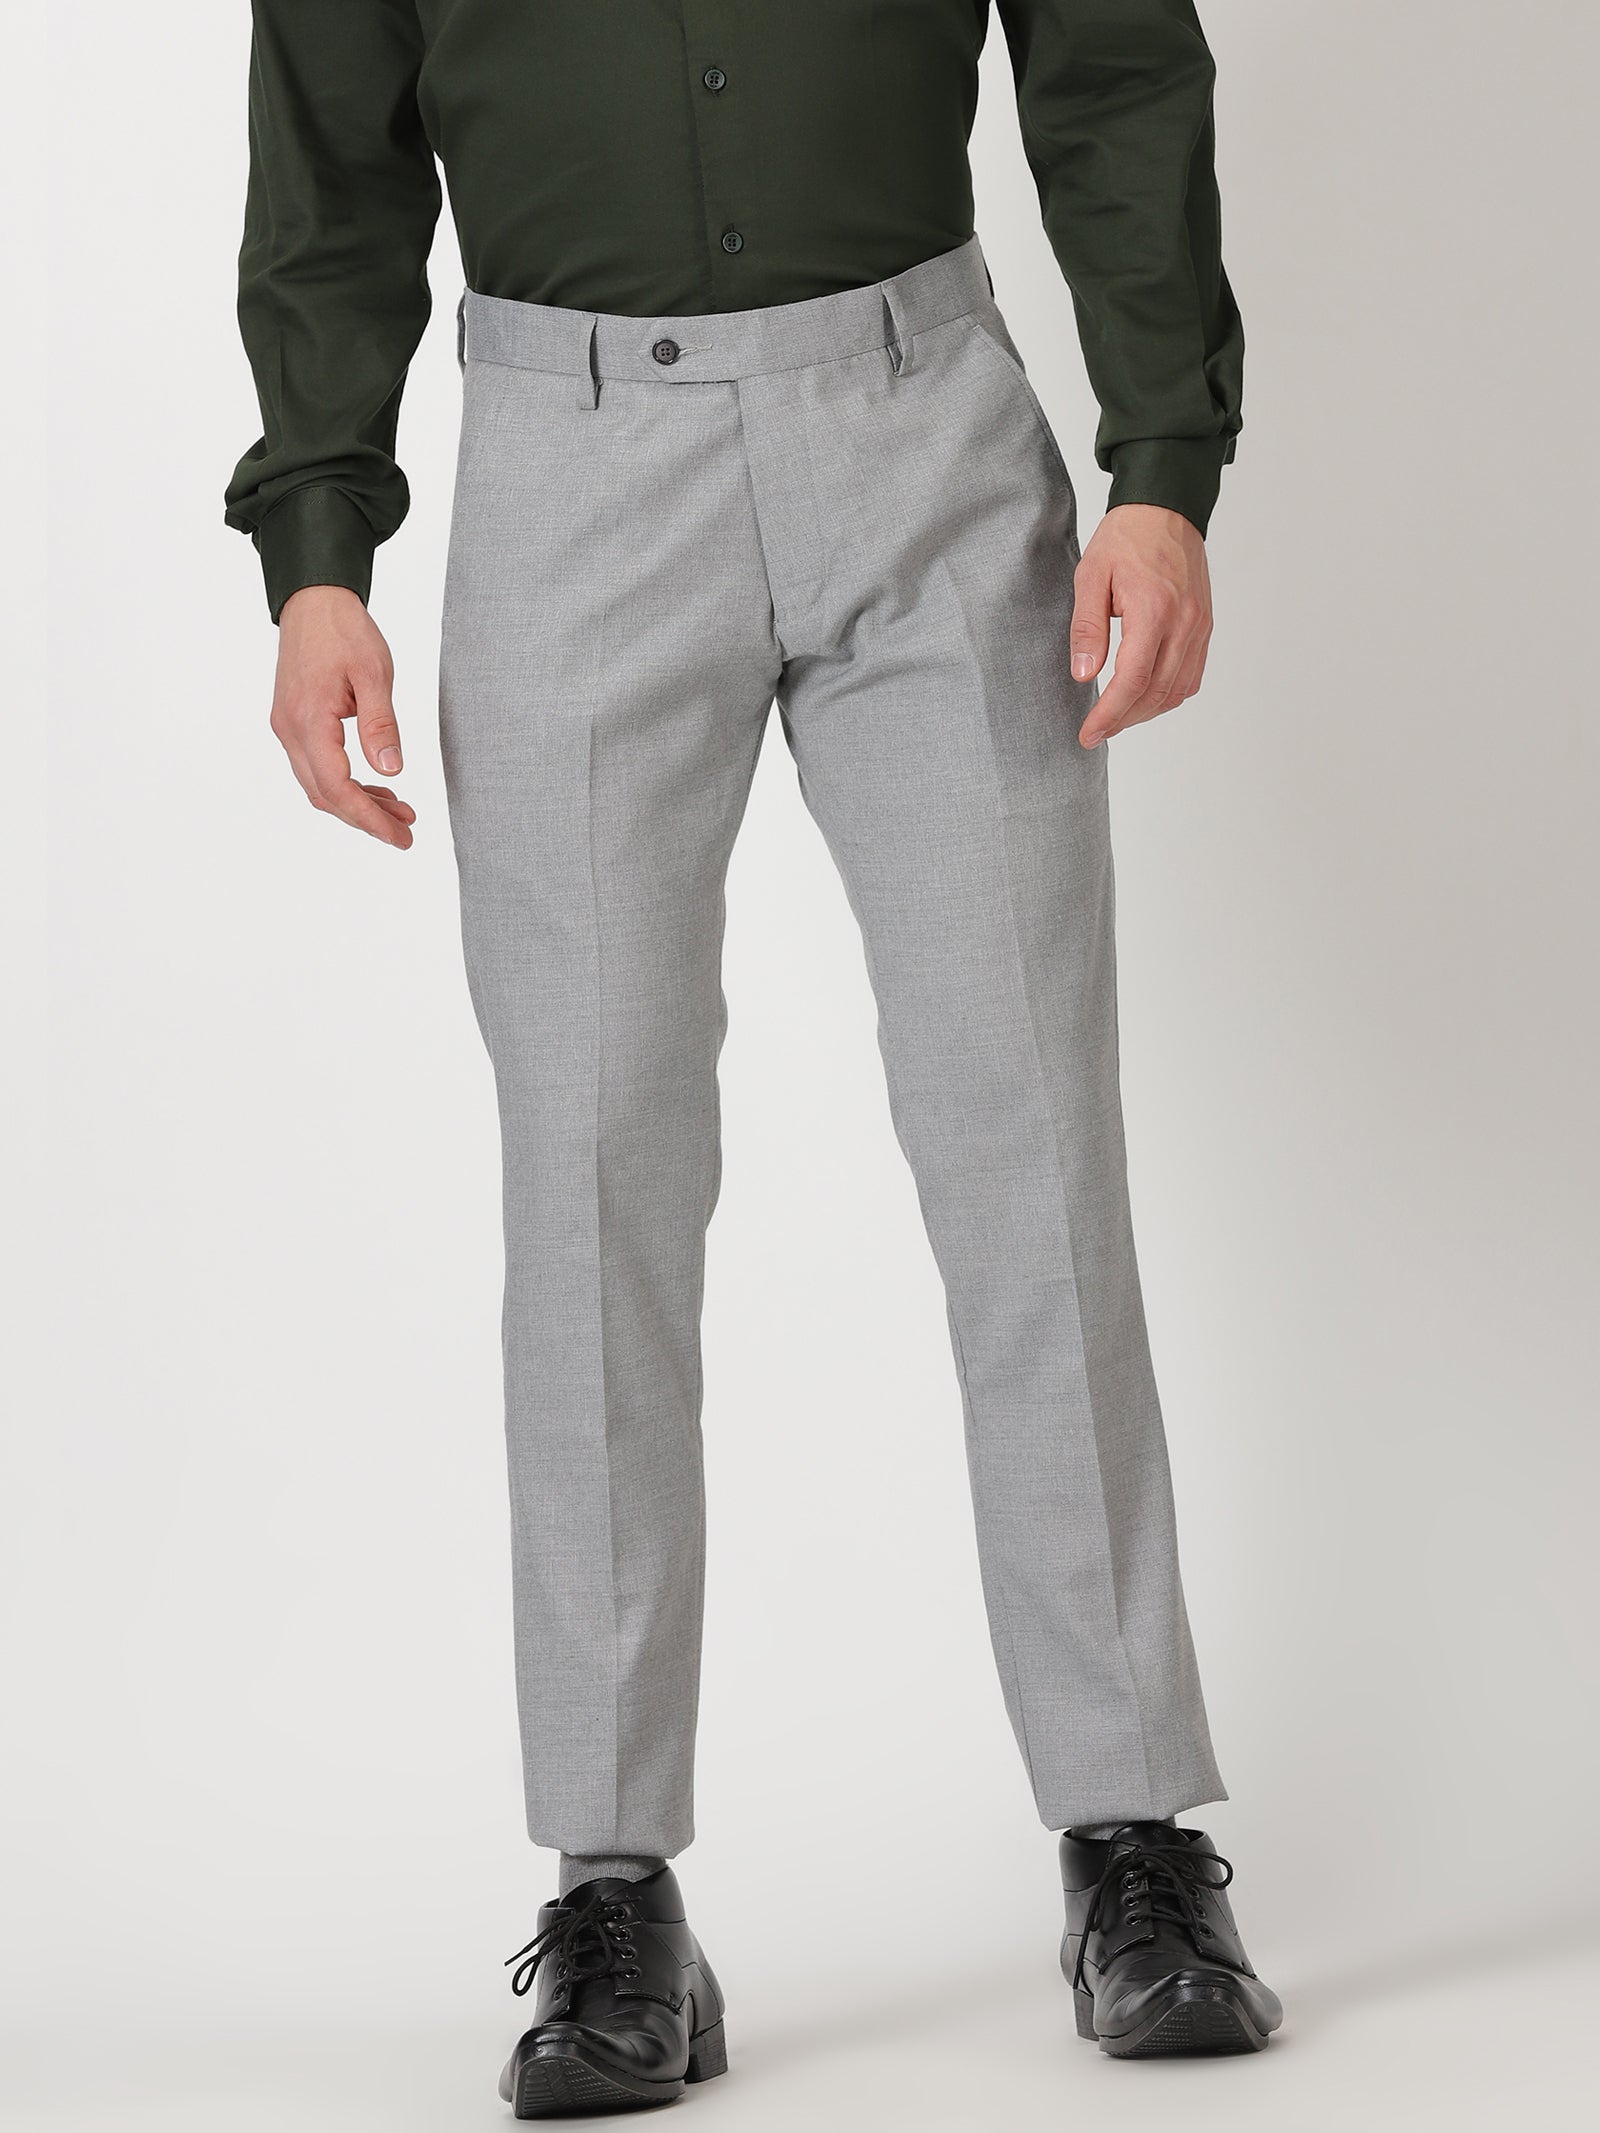 Slim Fit Mens Smart Office Trousers Black Grey Navy Skinny Leg Pants  28